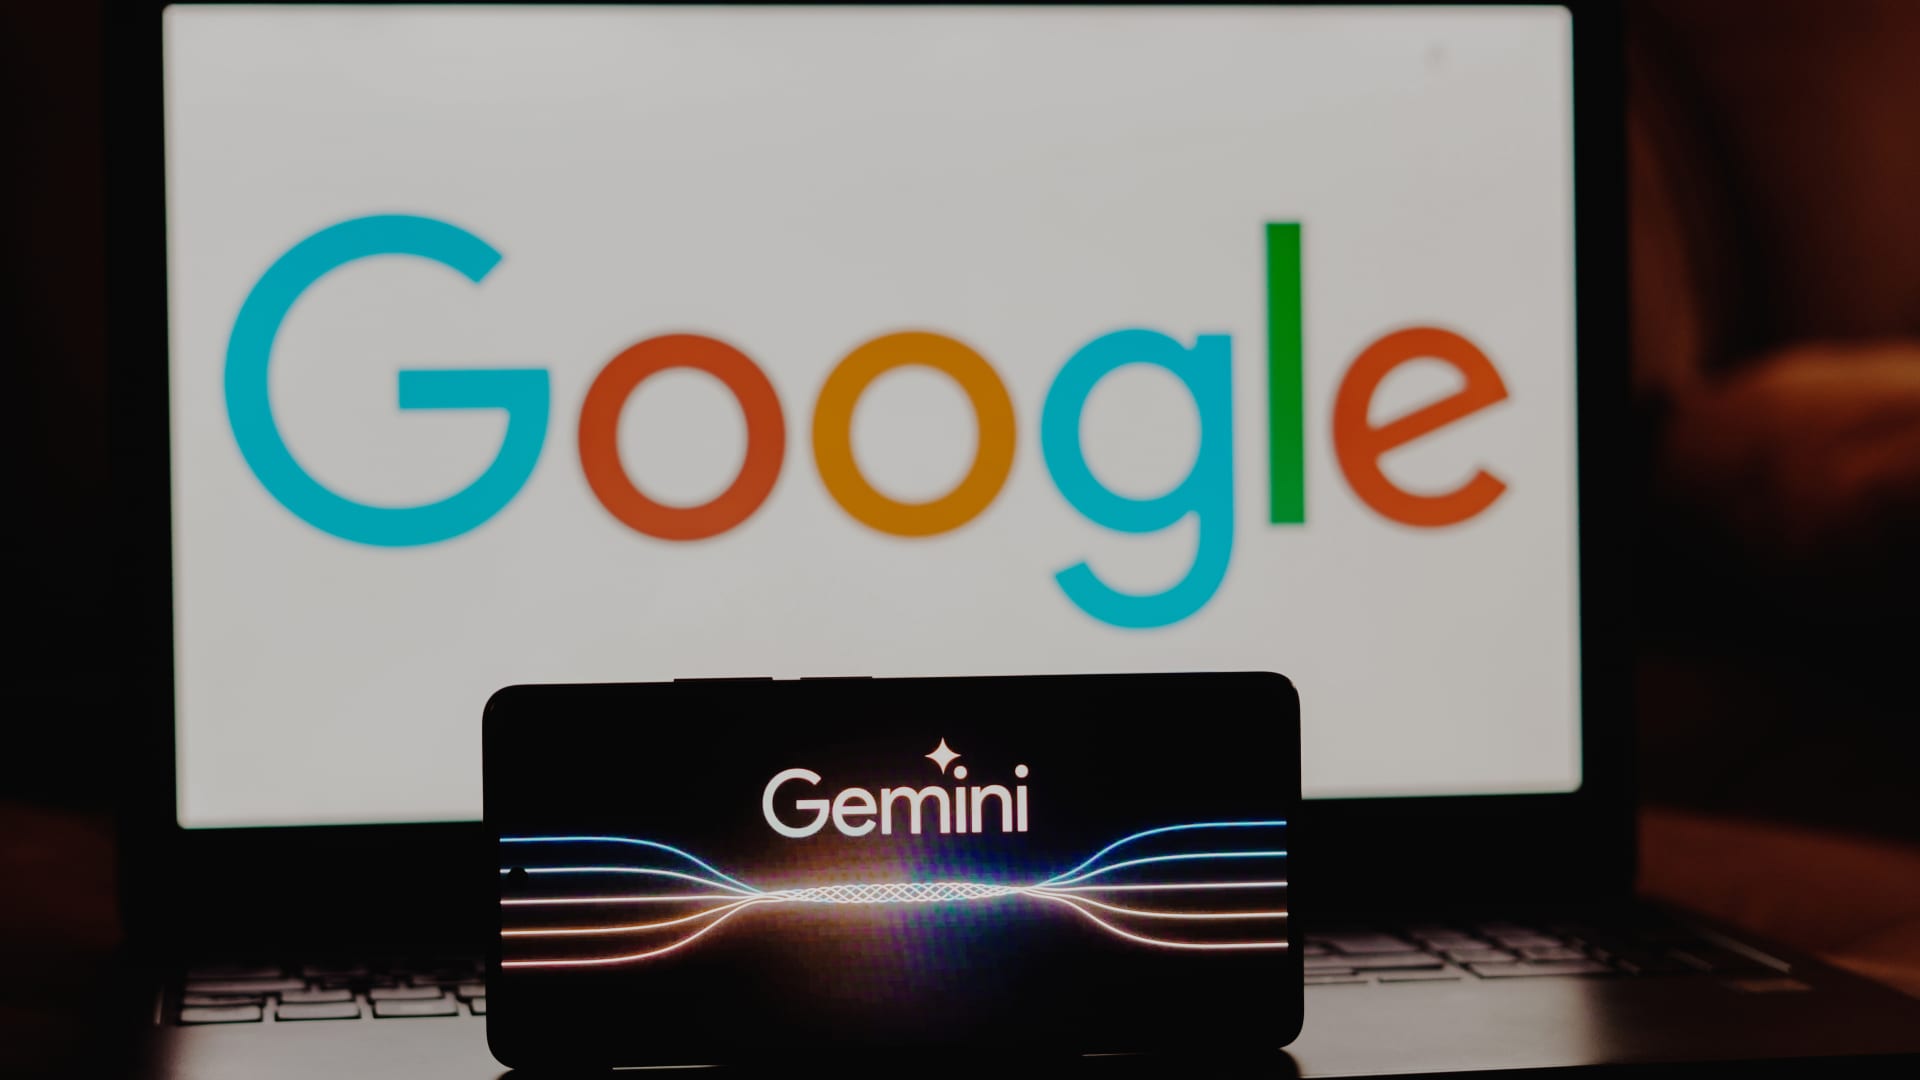 Google faces controversy over edited Gemini AI demo video